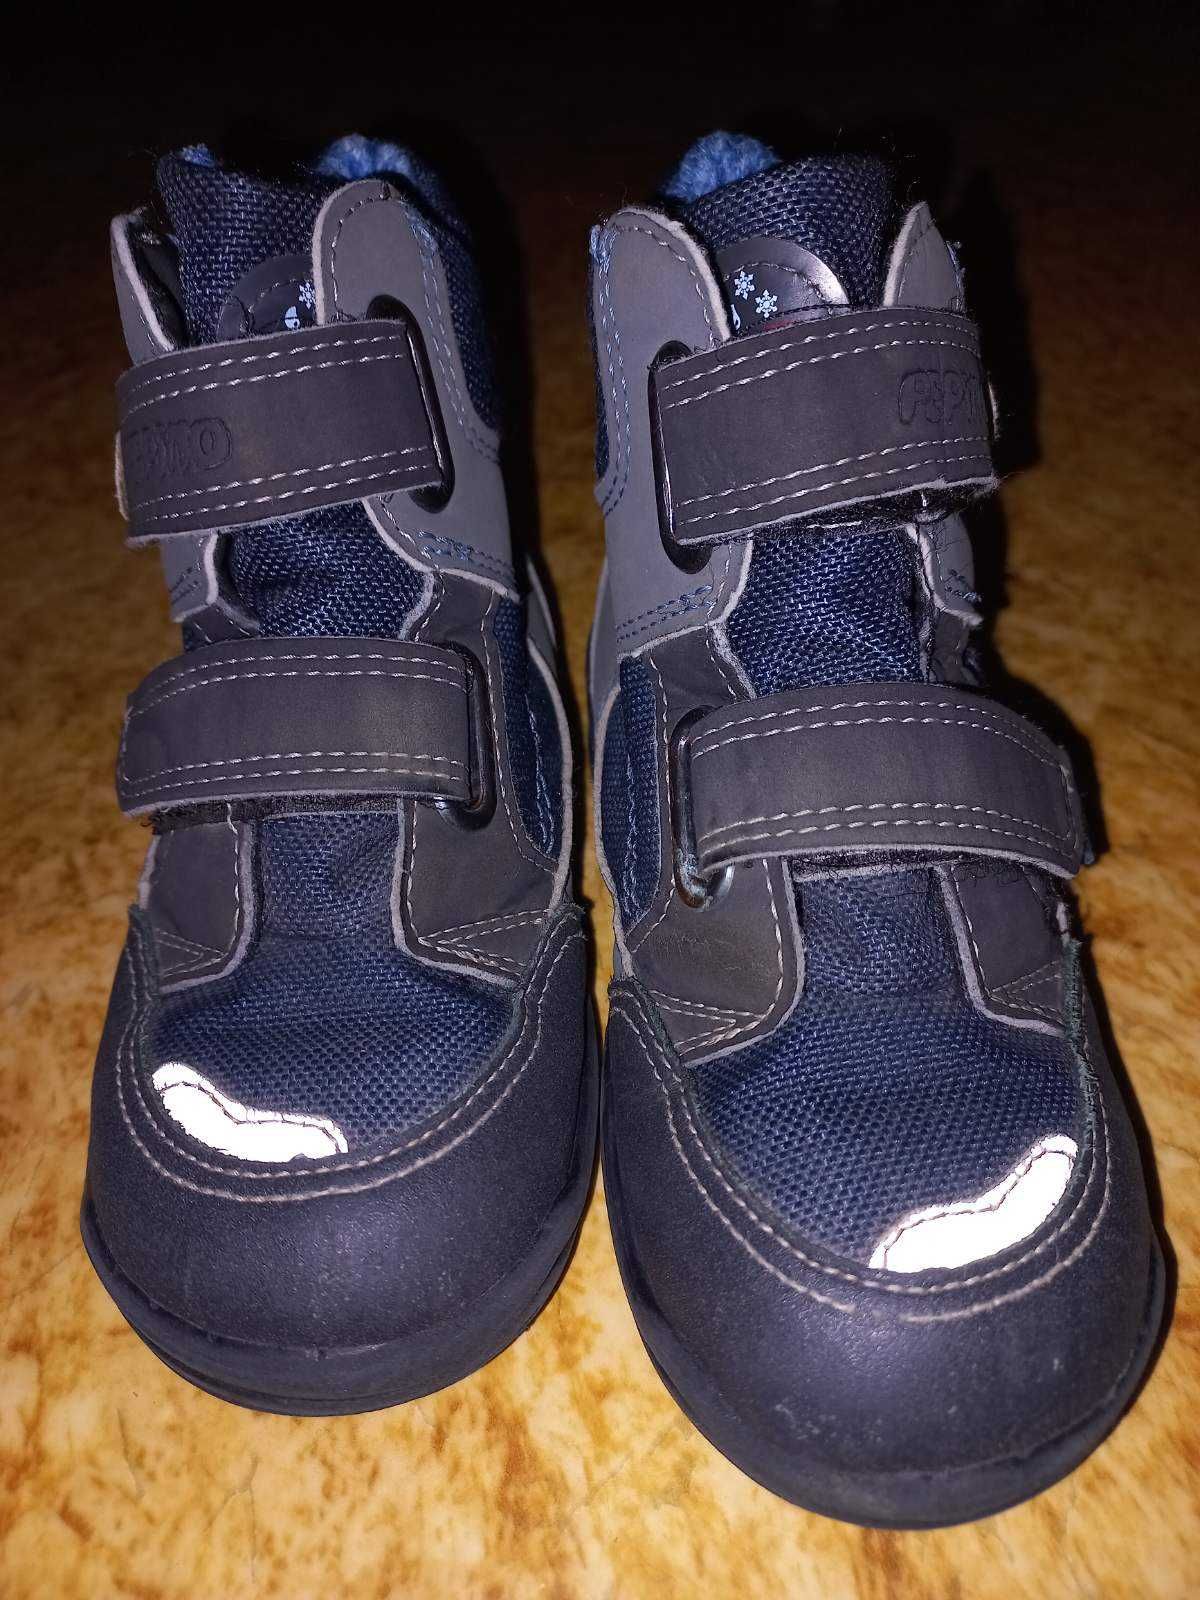 єврозима термо чобітки 25 розмір 15,5 см для хлопчика